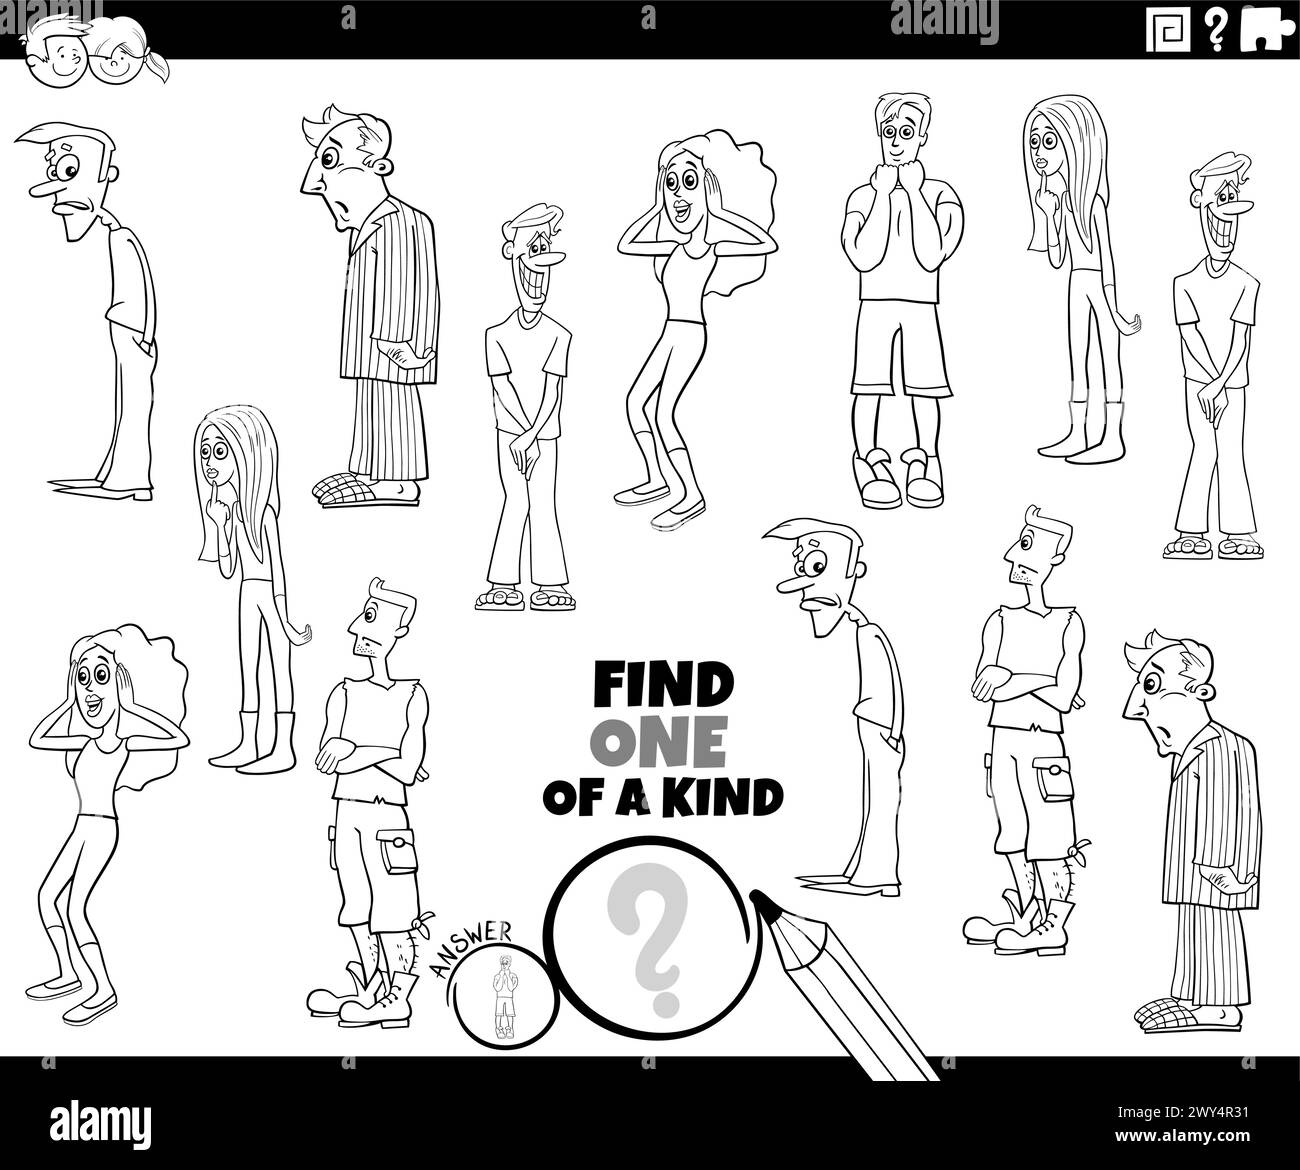 Illustration de dessin animé de trouver l'un d'une activité éducative d'image en genre avec la page de coloriage de personnages de jeunes gens surpris Illustration de Vecteur